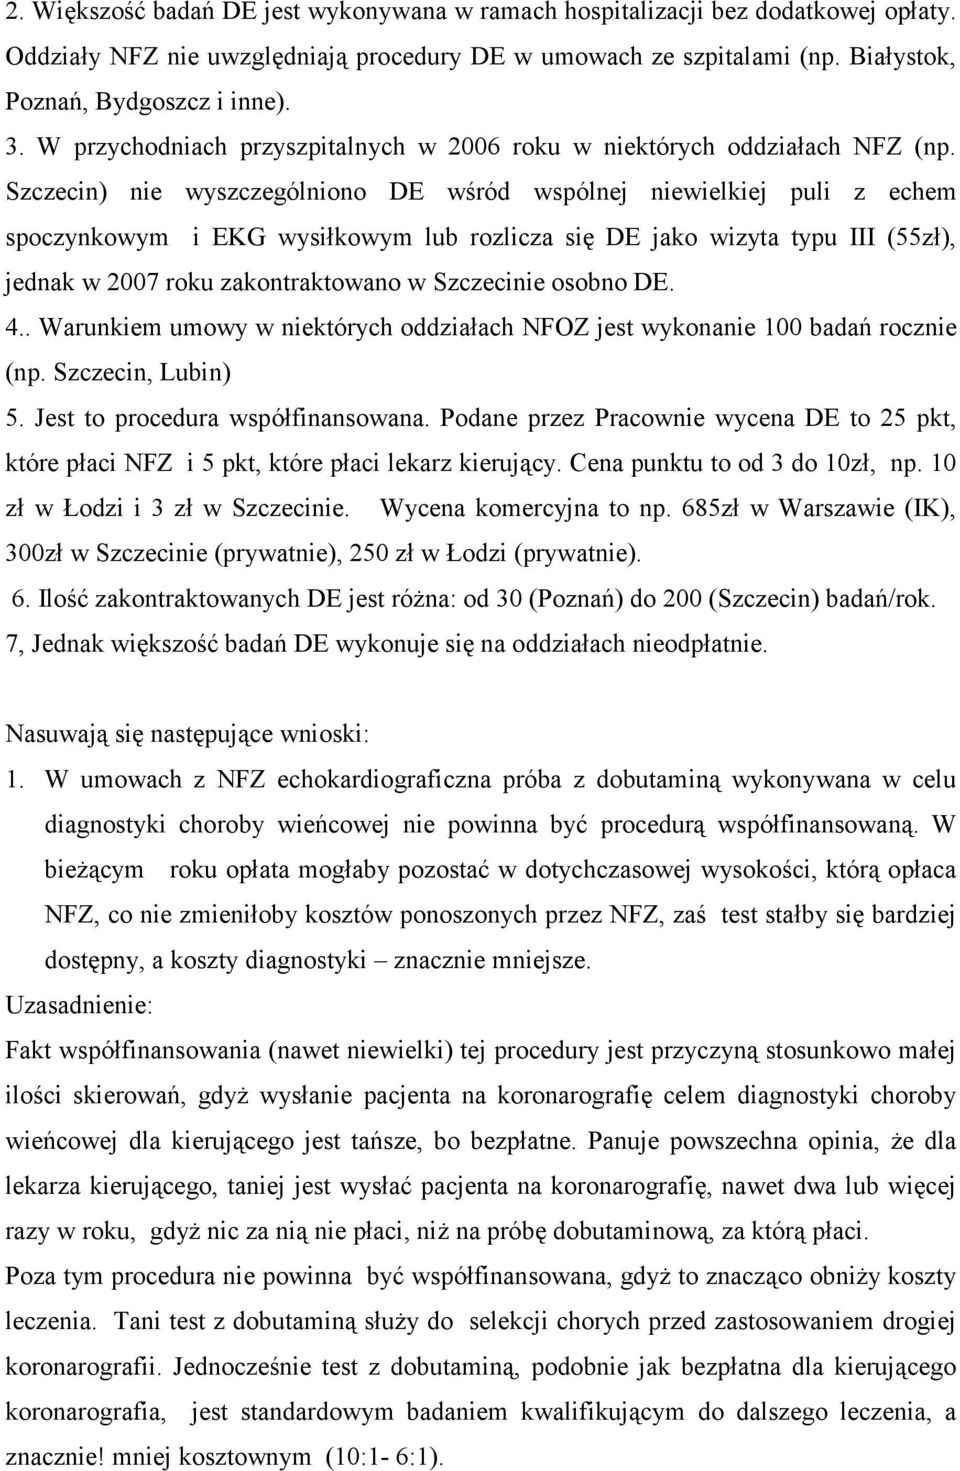 Szczecin) nie wyszczególniono DE wśród wspólnej niewielkiej puli z echem spoczynkowym i EKG wysiłkowym lub rozlicza się DE jako wizyta typu III (55zł), jednak w 2007 roku zakontraktowano w Szczecinie